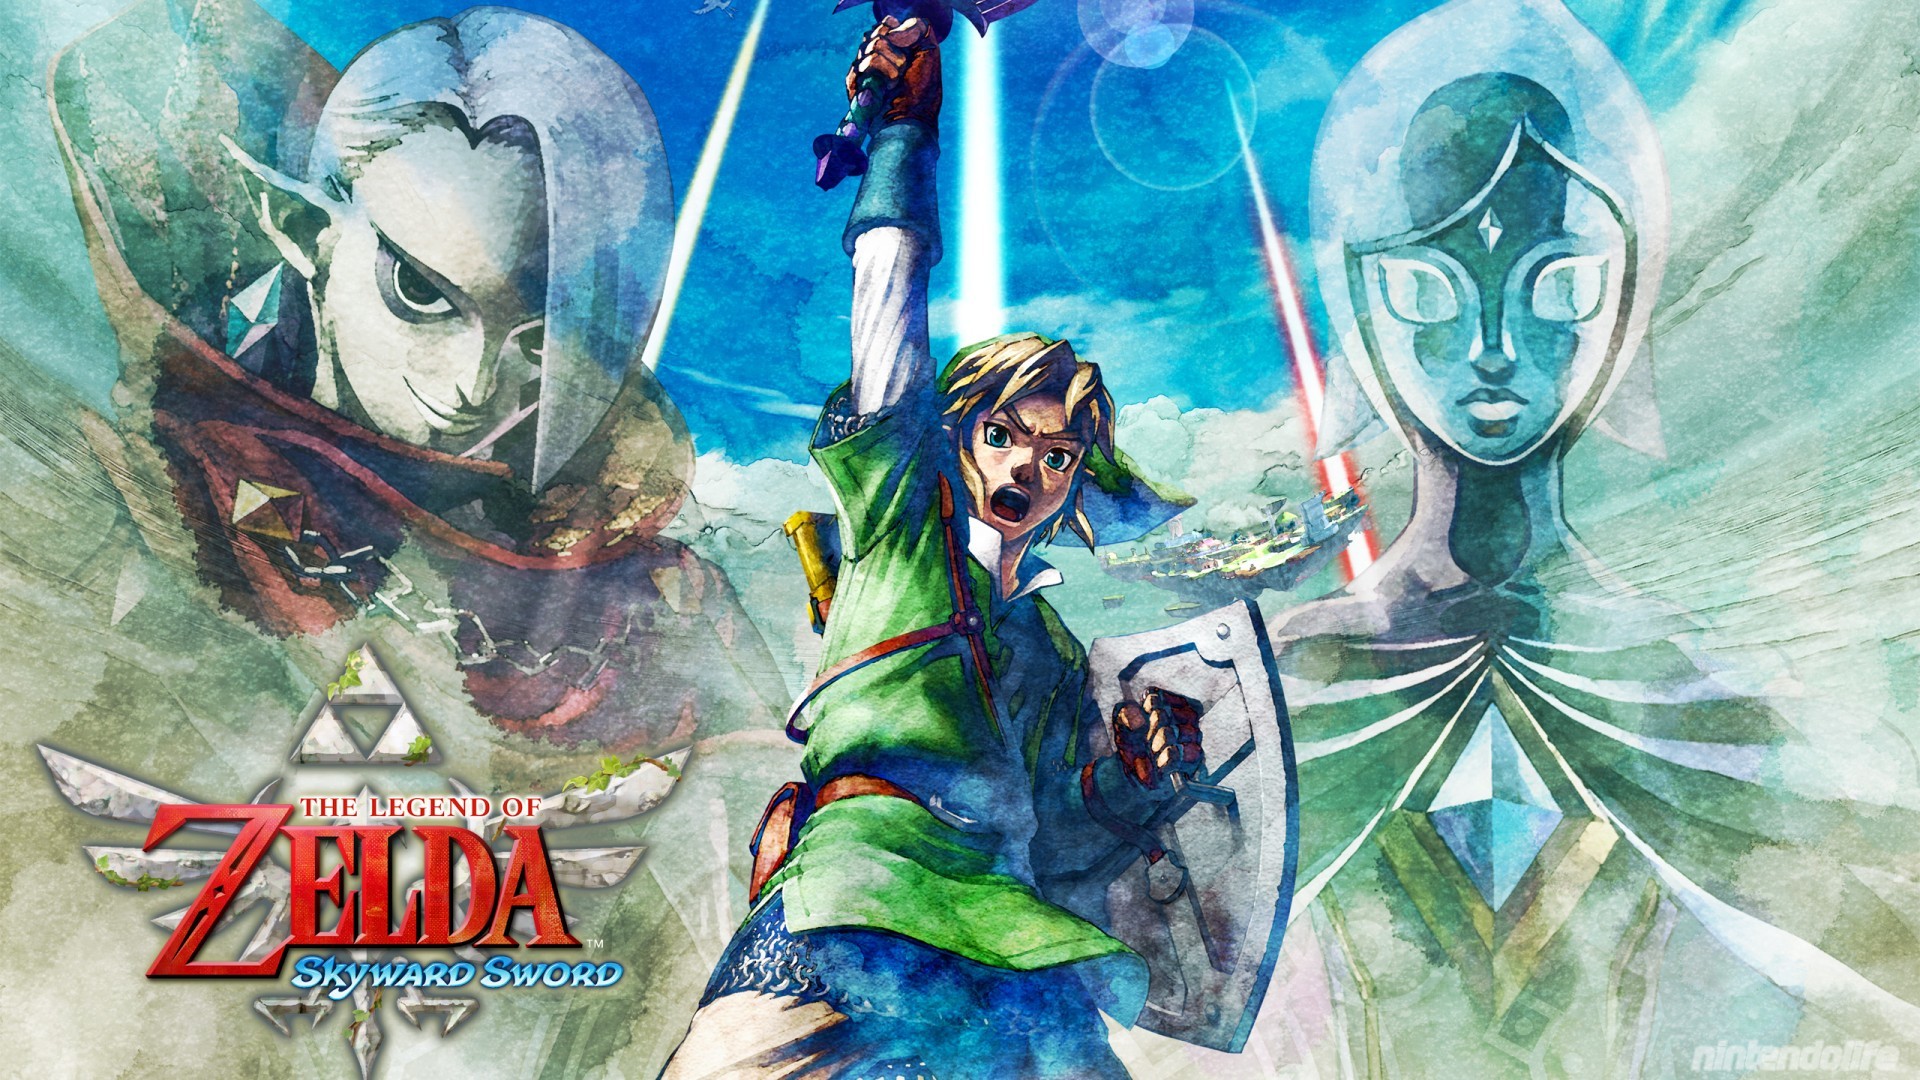 1920x1080 Zelda: Skyward Sword - Wallpaper 3. Wallpaper: Zelda: Skyward Sword ...